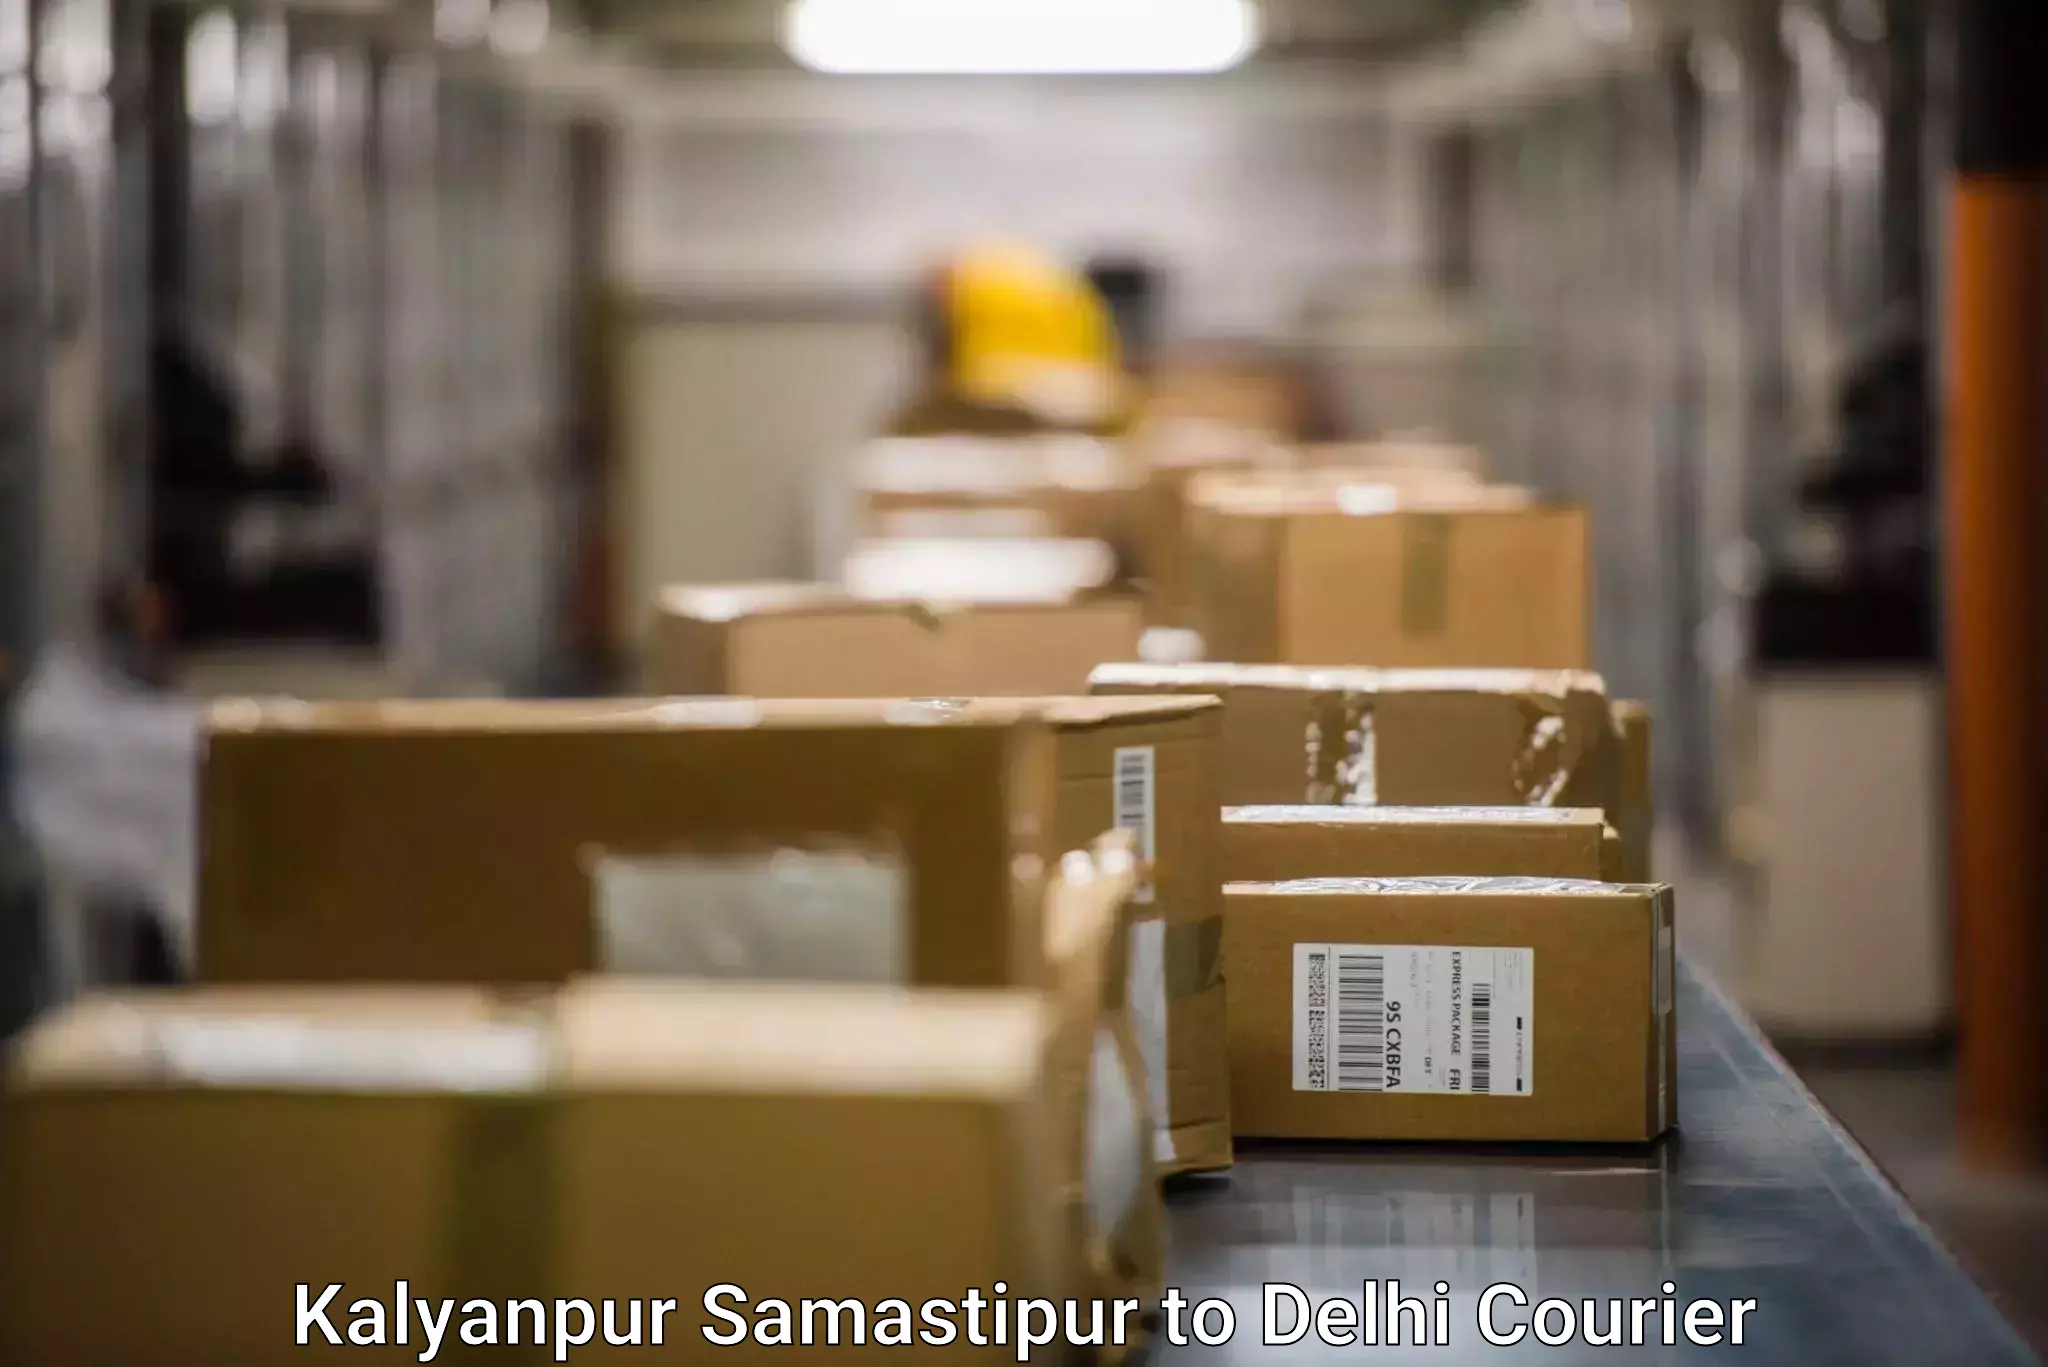 Holiday shipping services in Kalyanpur Samastipur to Subhash Nagar